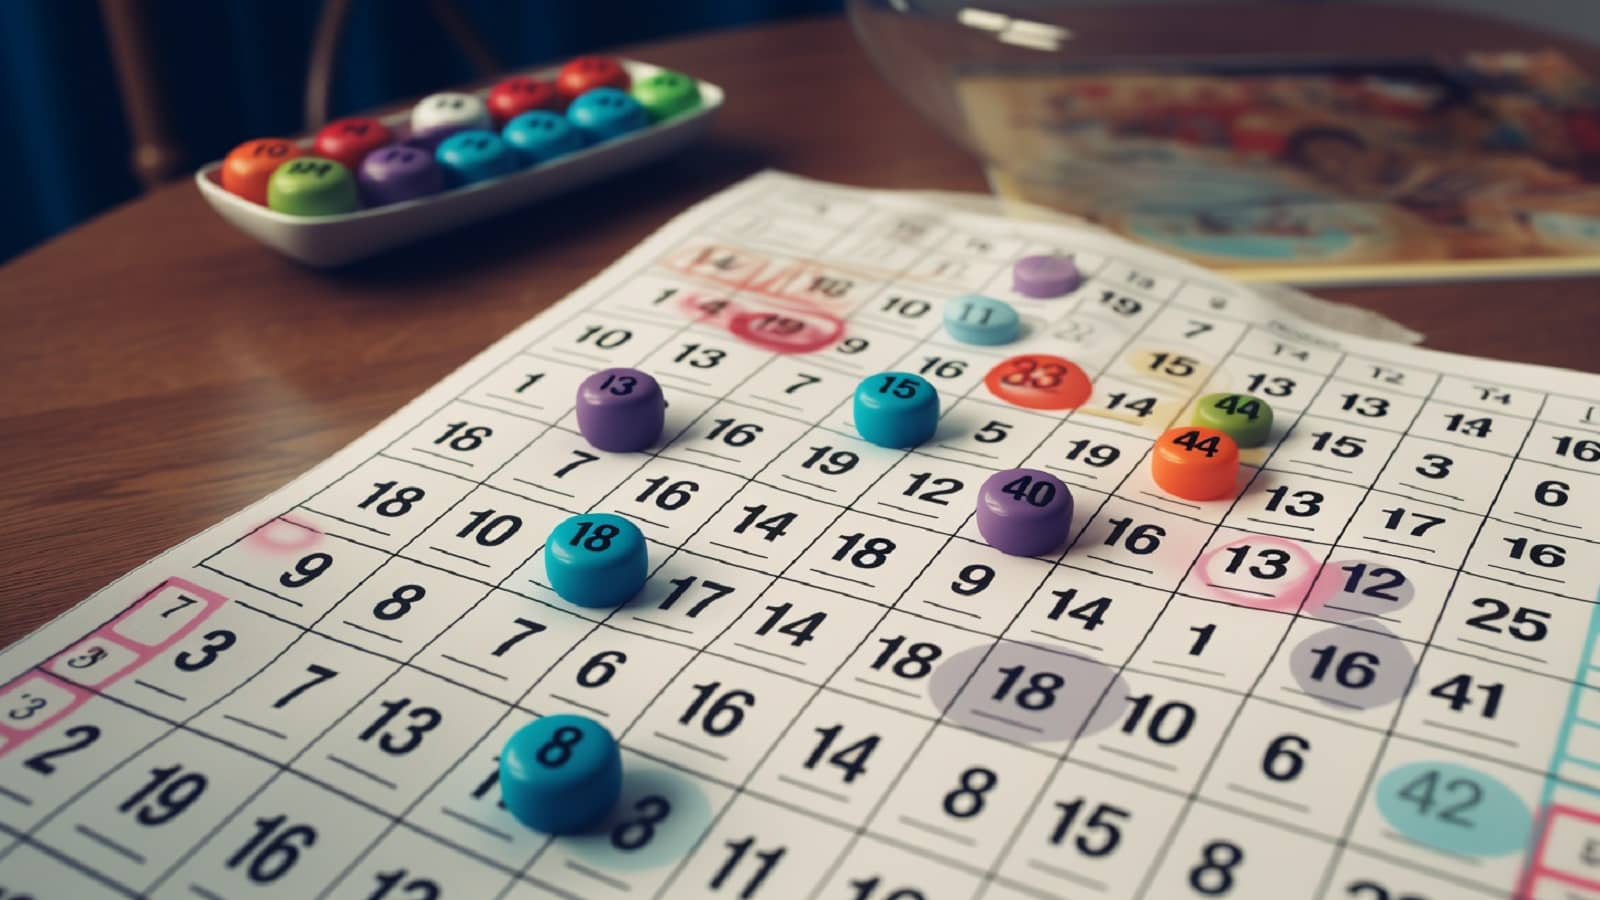 różnokolorowa karta do gry bingo na drewnianym stole wraz z pionkami